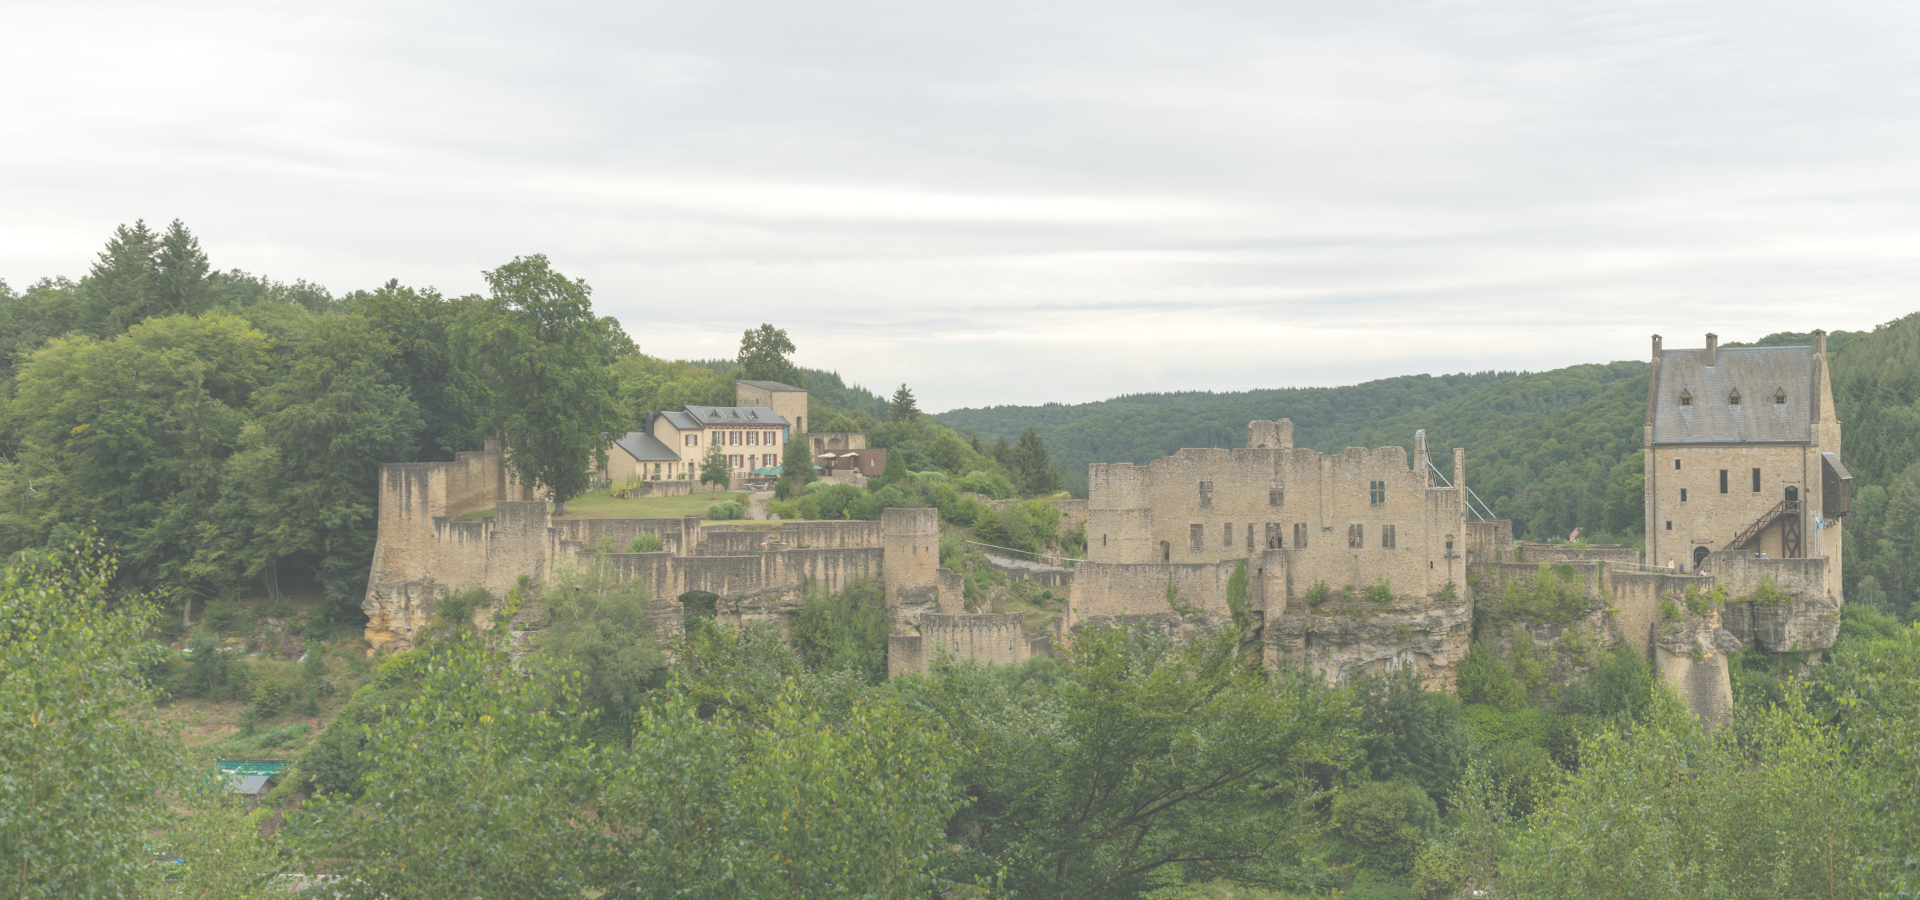 The Castle of Larochette, Mersch,Luxembourg